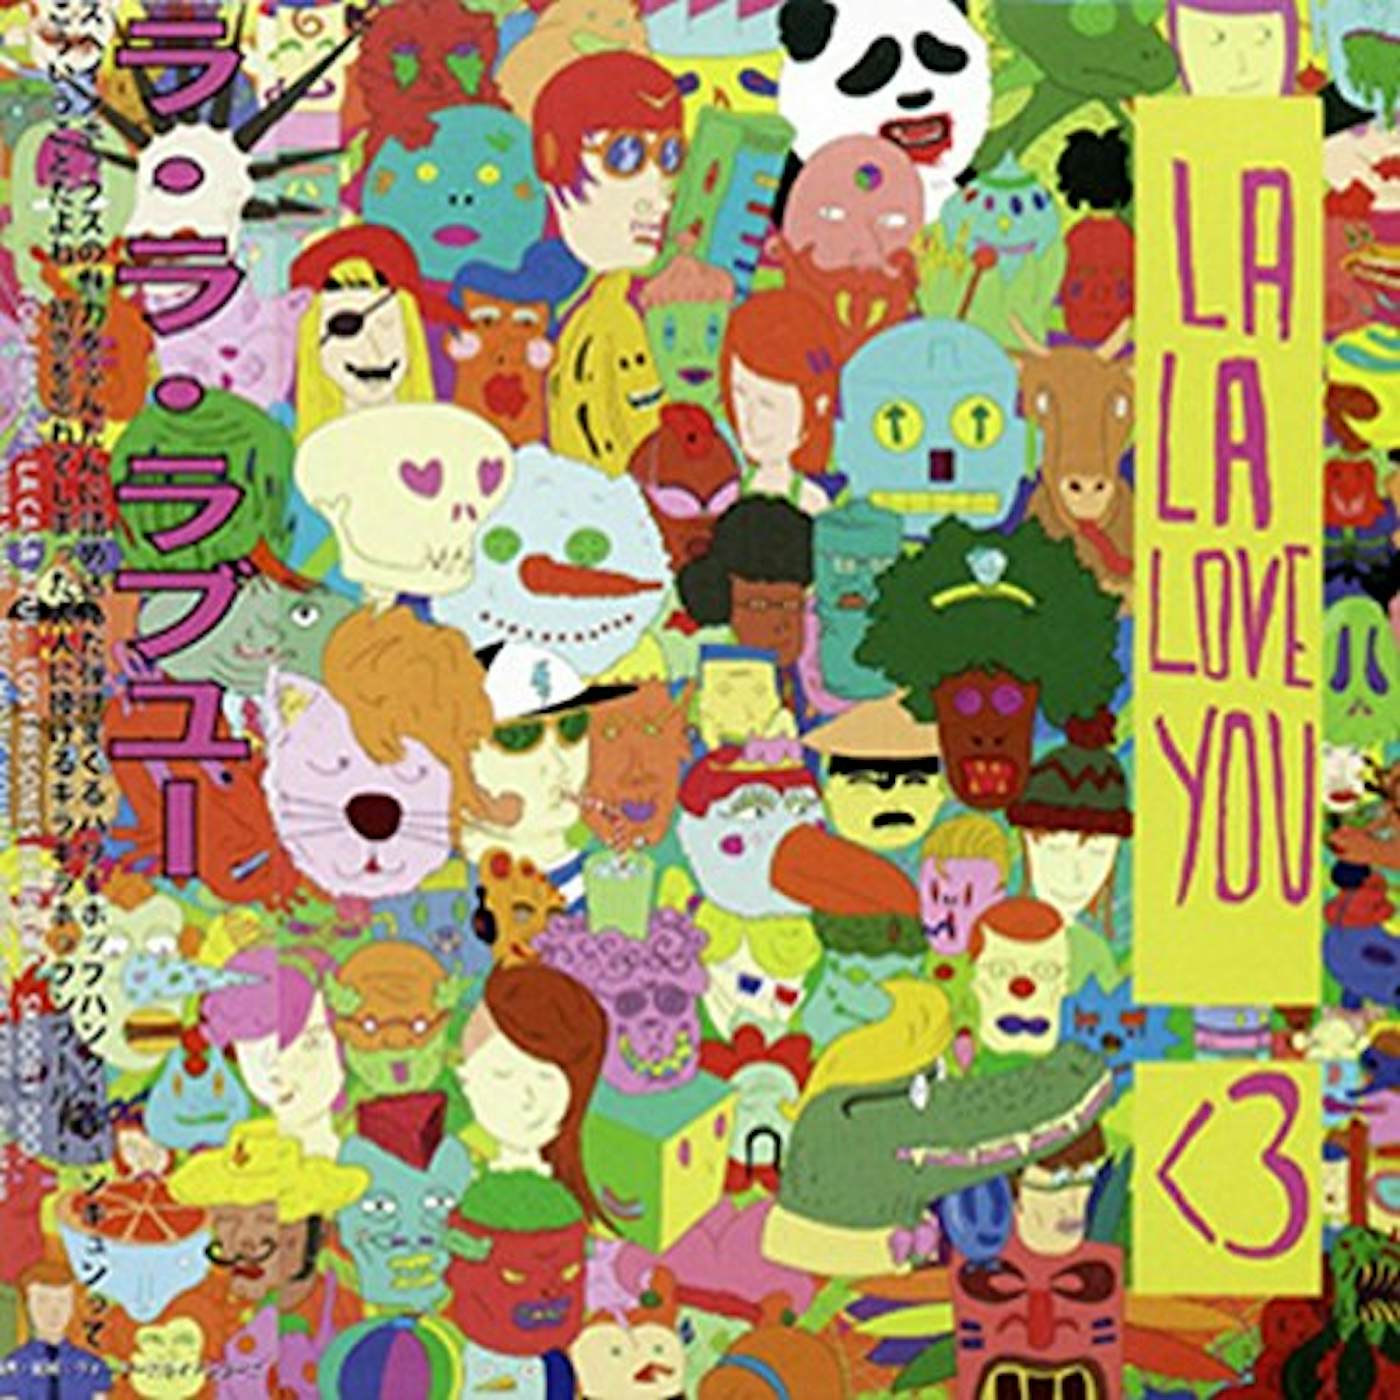 La La Love You < 3 CD